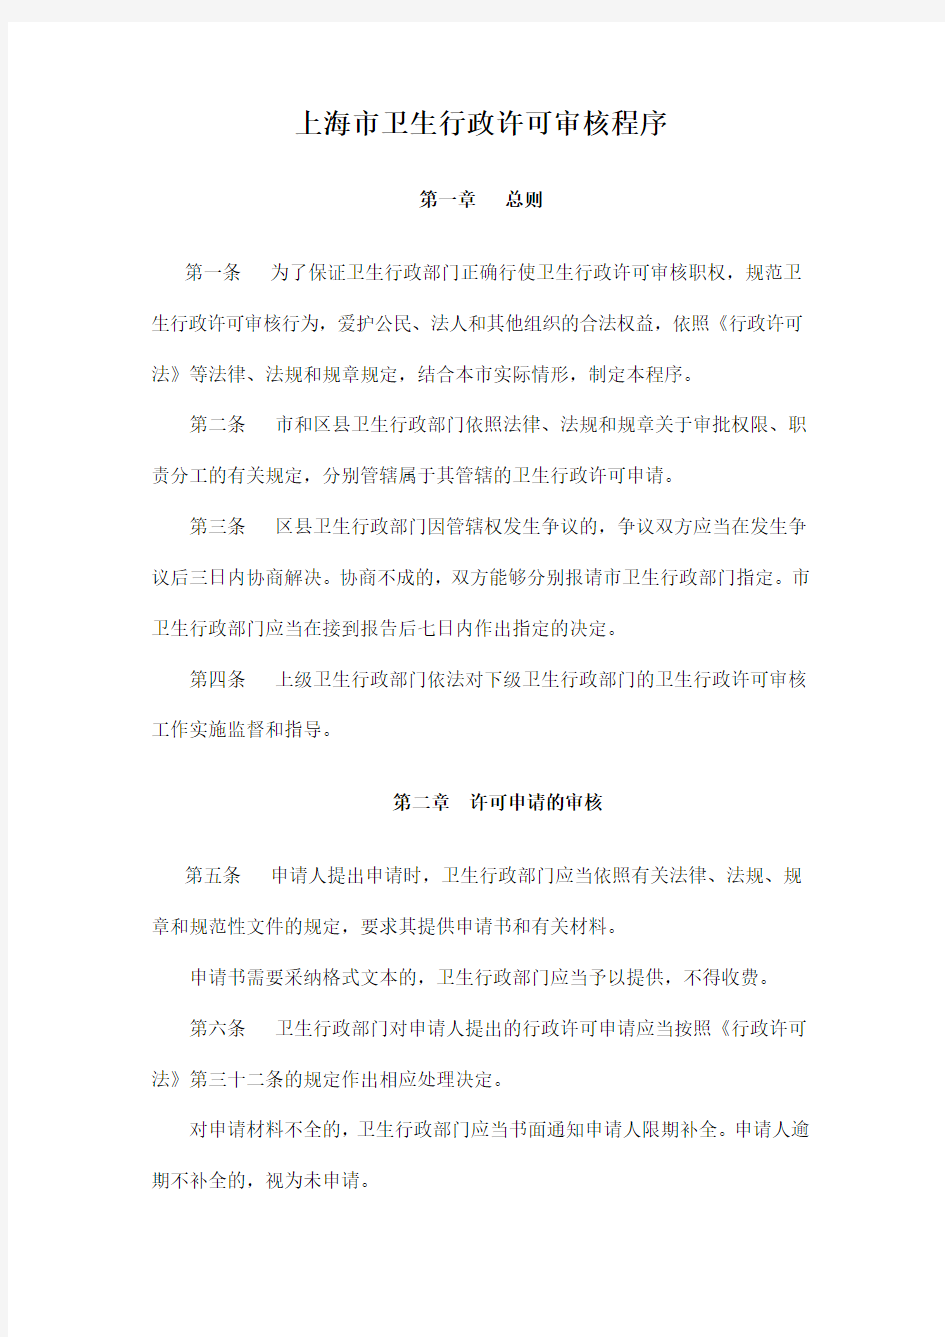 上海市卫生行政许可审核程序